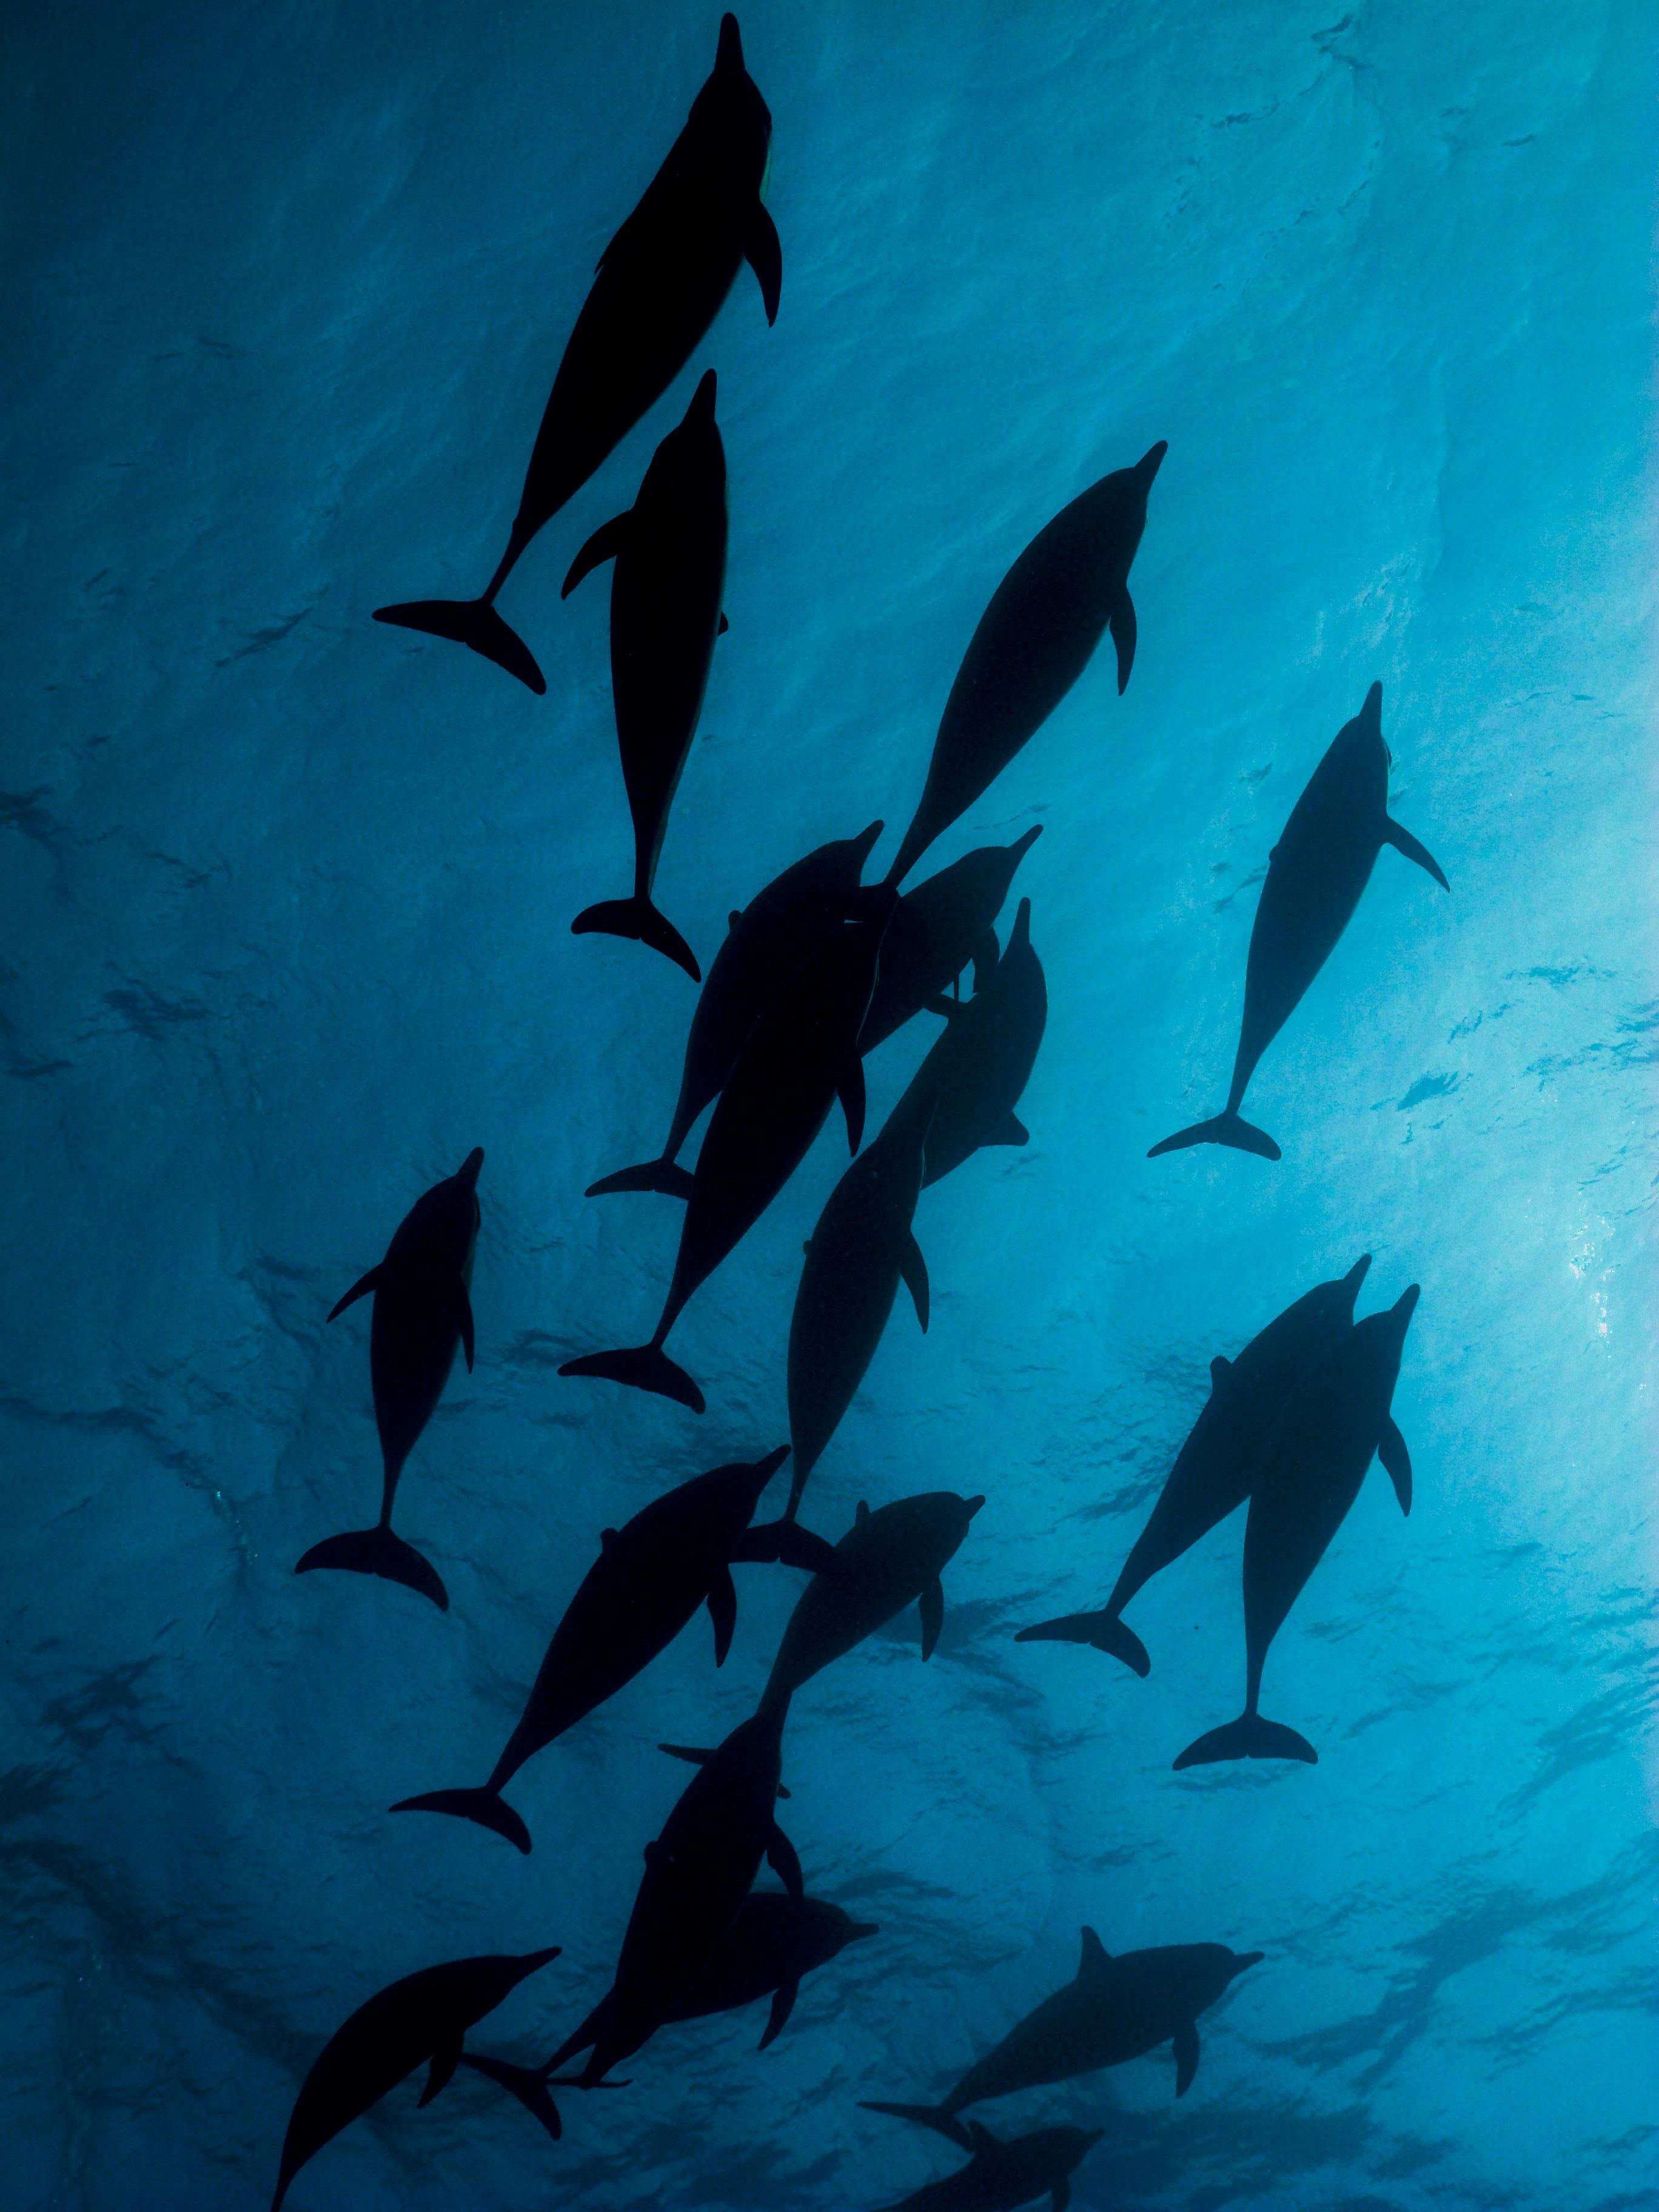 Δελφίνια από την οπτική γωνία ενός ψαροντούφεκο